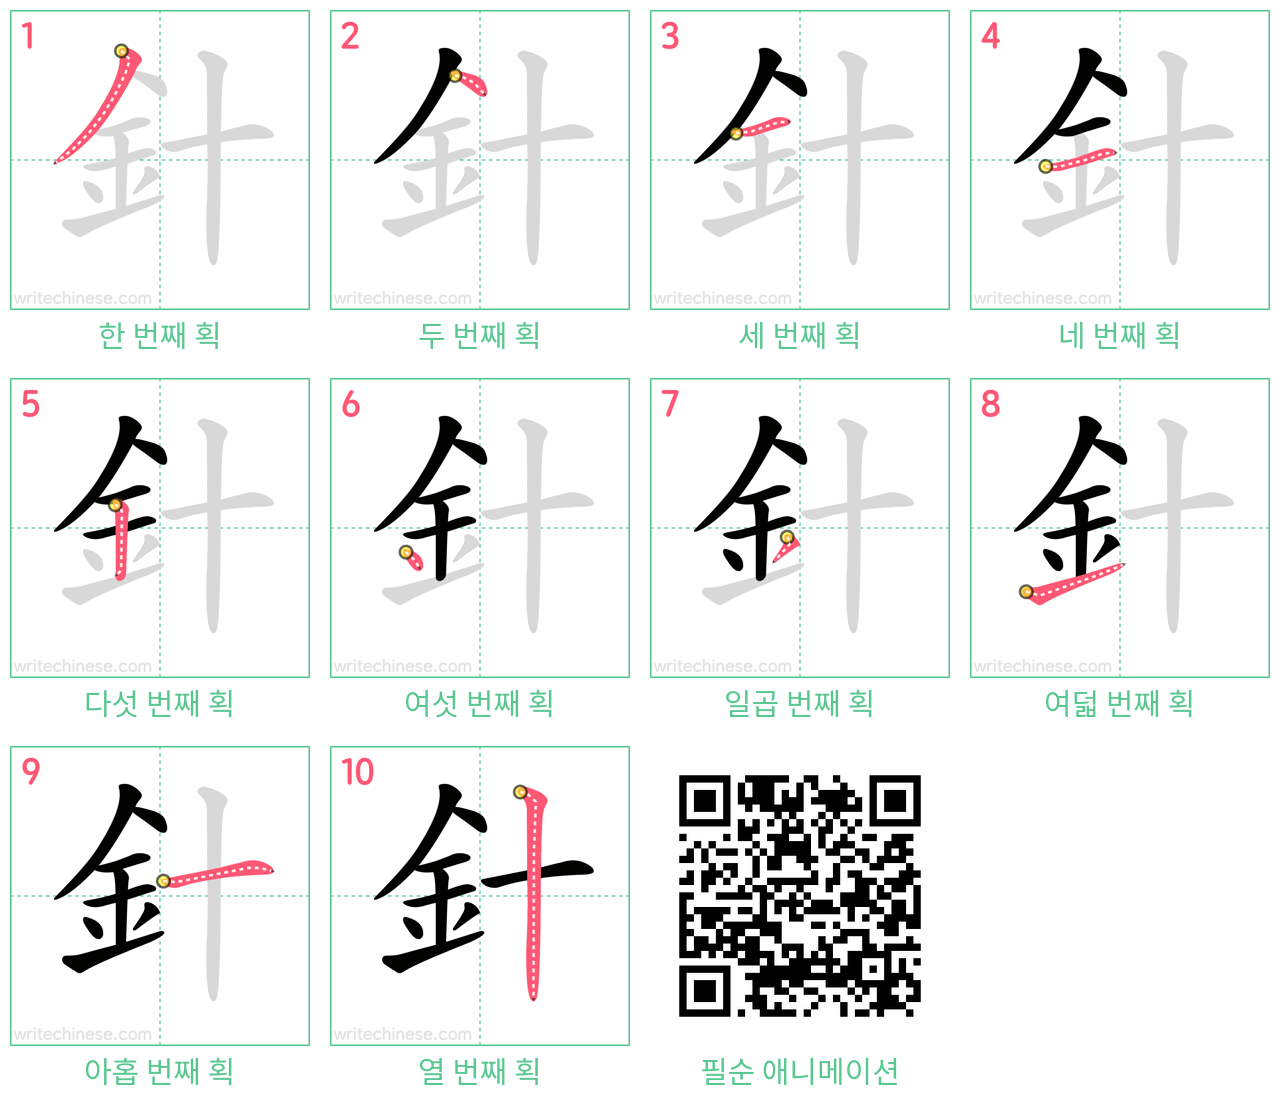 針 step-by-step stroke order diagrams